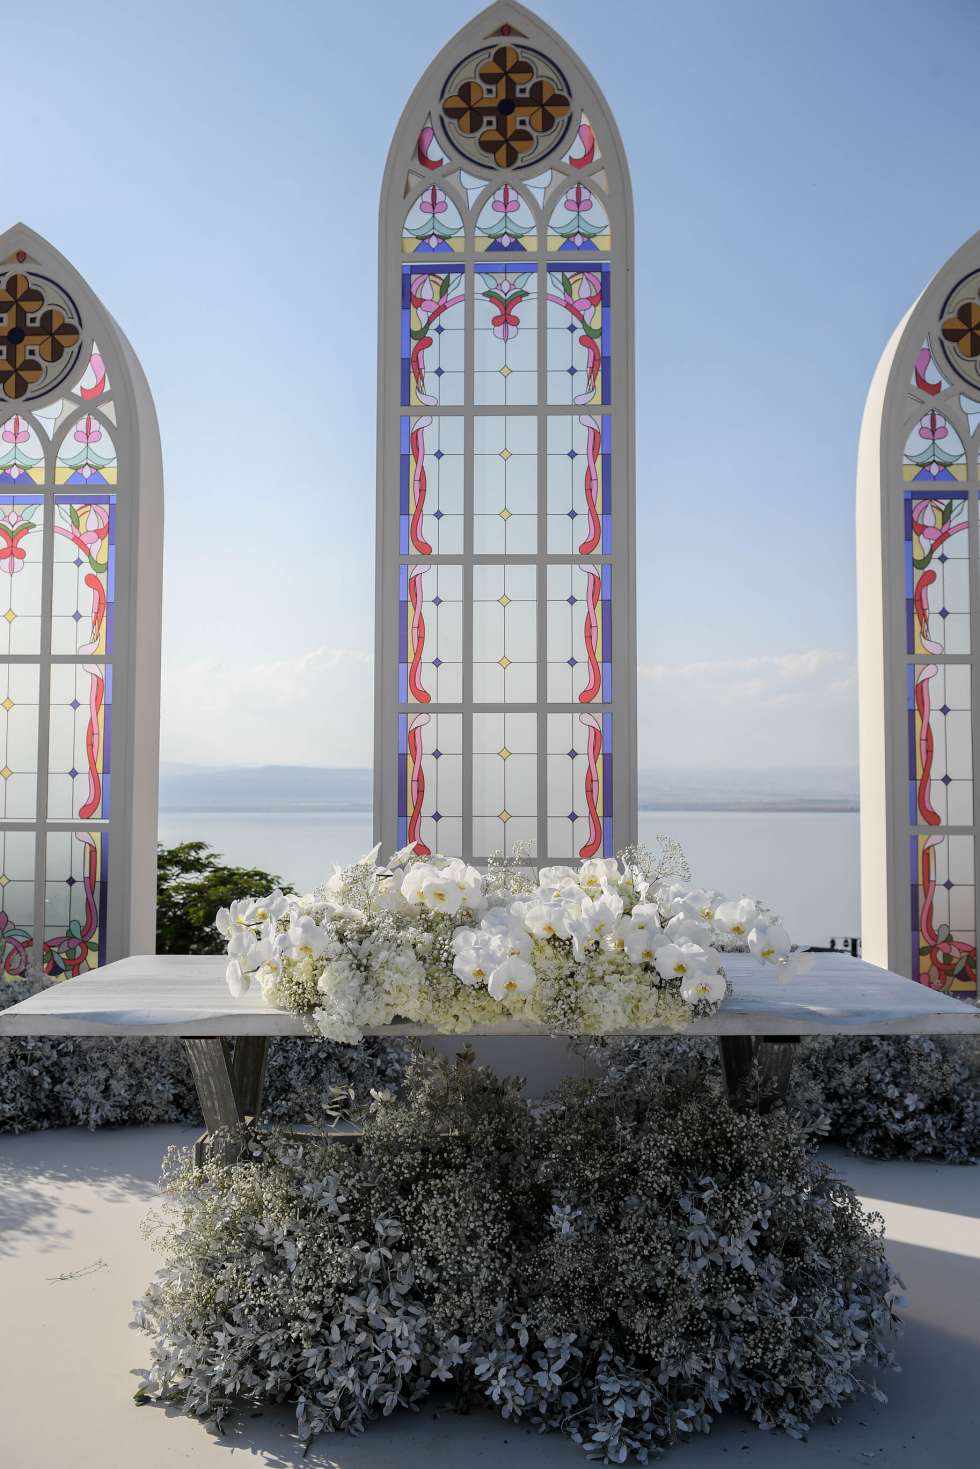 حفل زفاف صيفي خيالي أثيري في البحر الميت